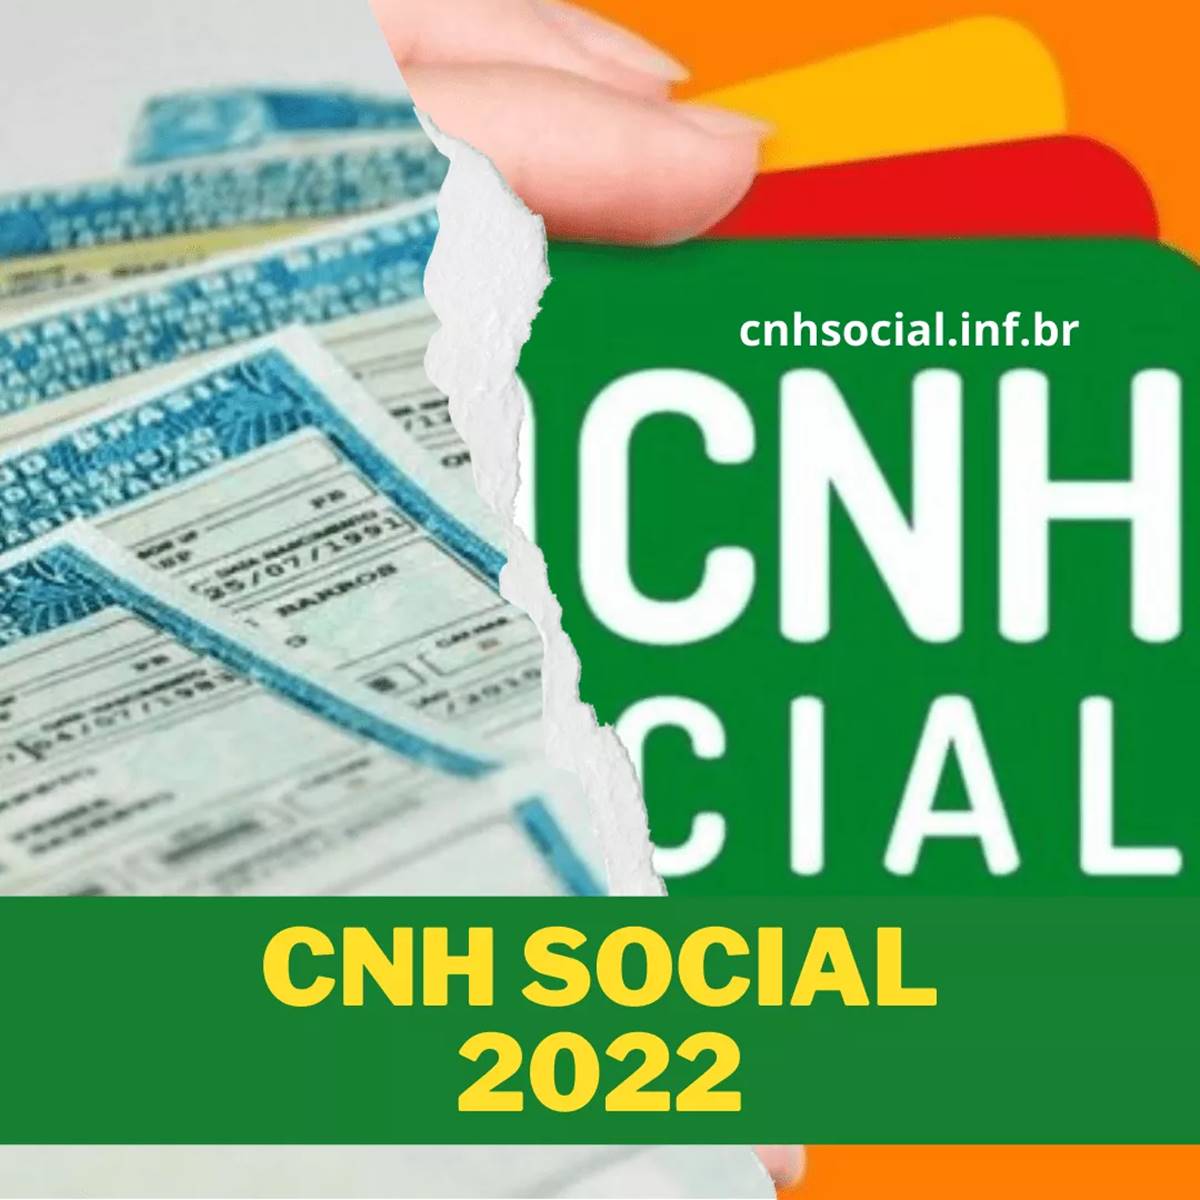 CNH Gratuita: CNH Social 2022, tudo que você precisa saber